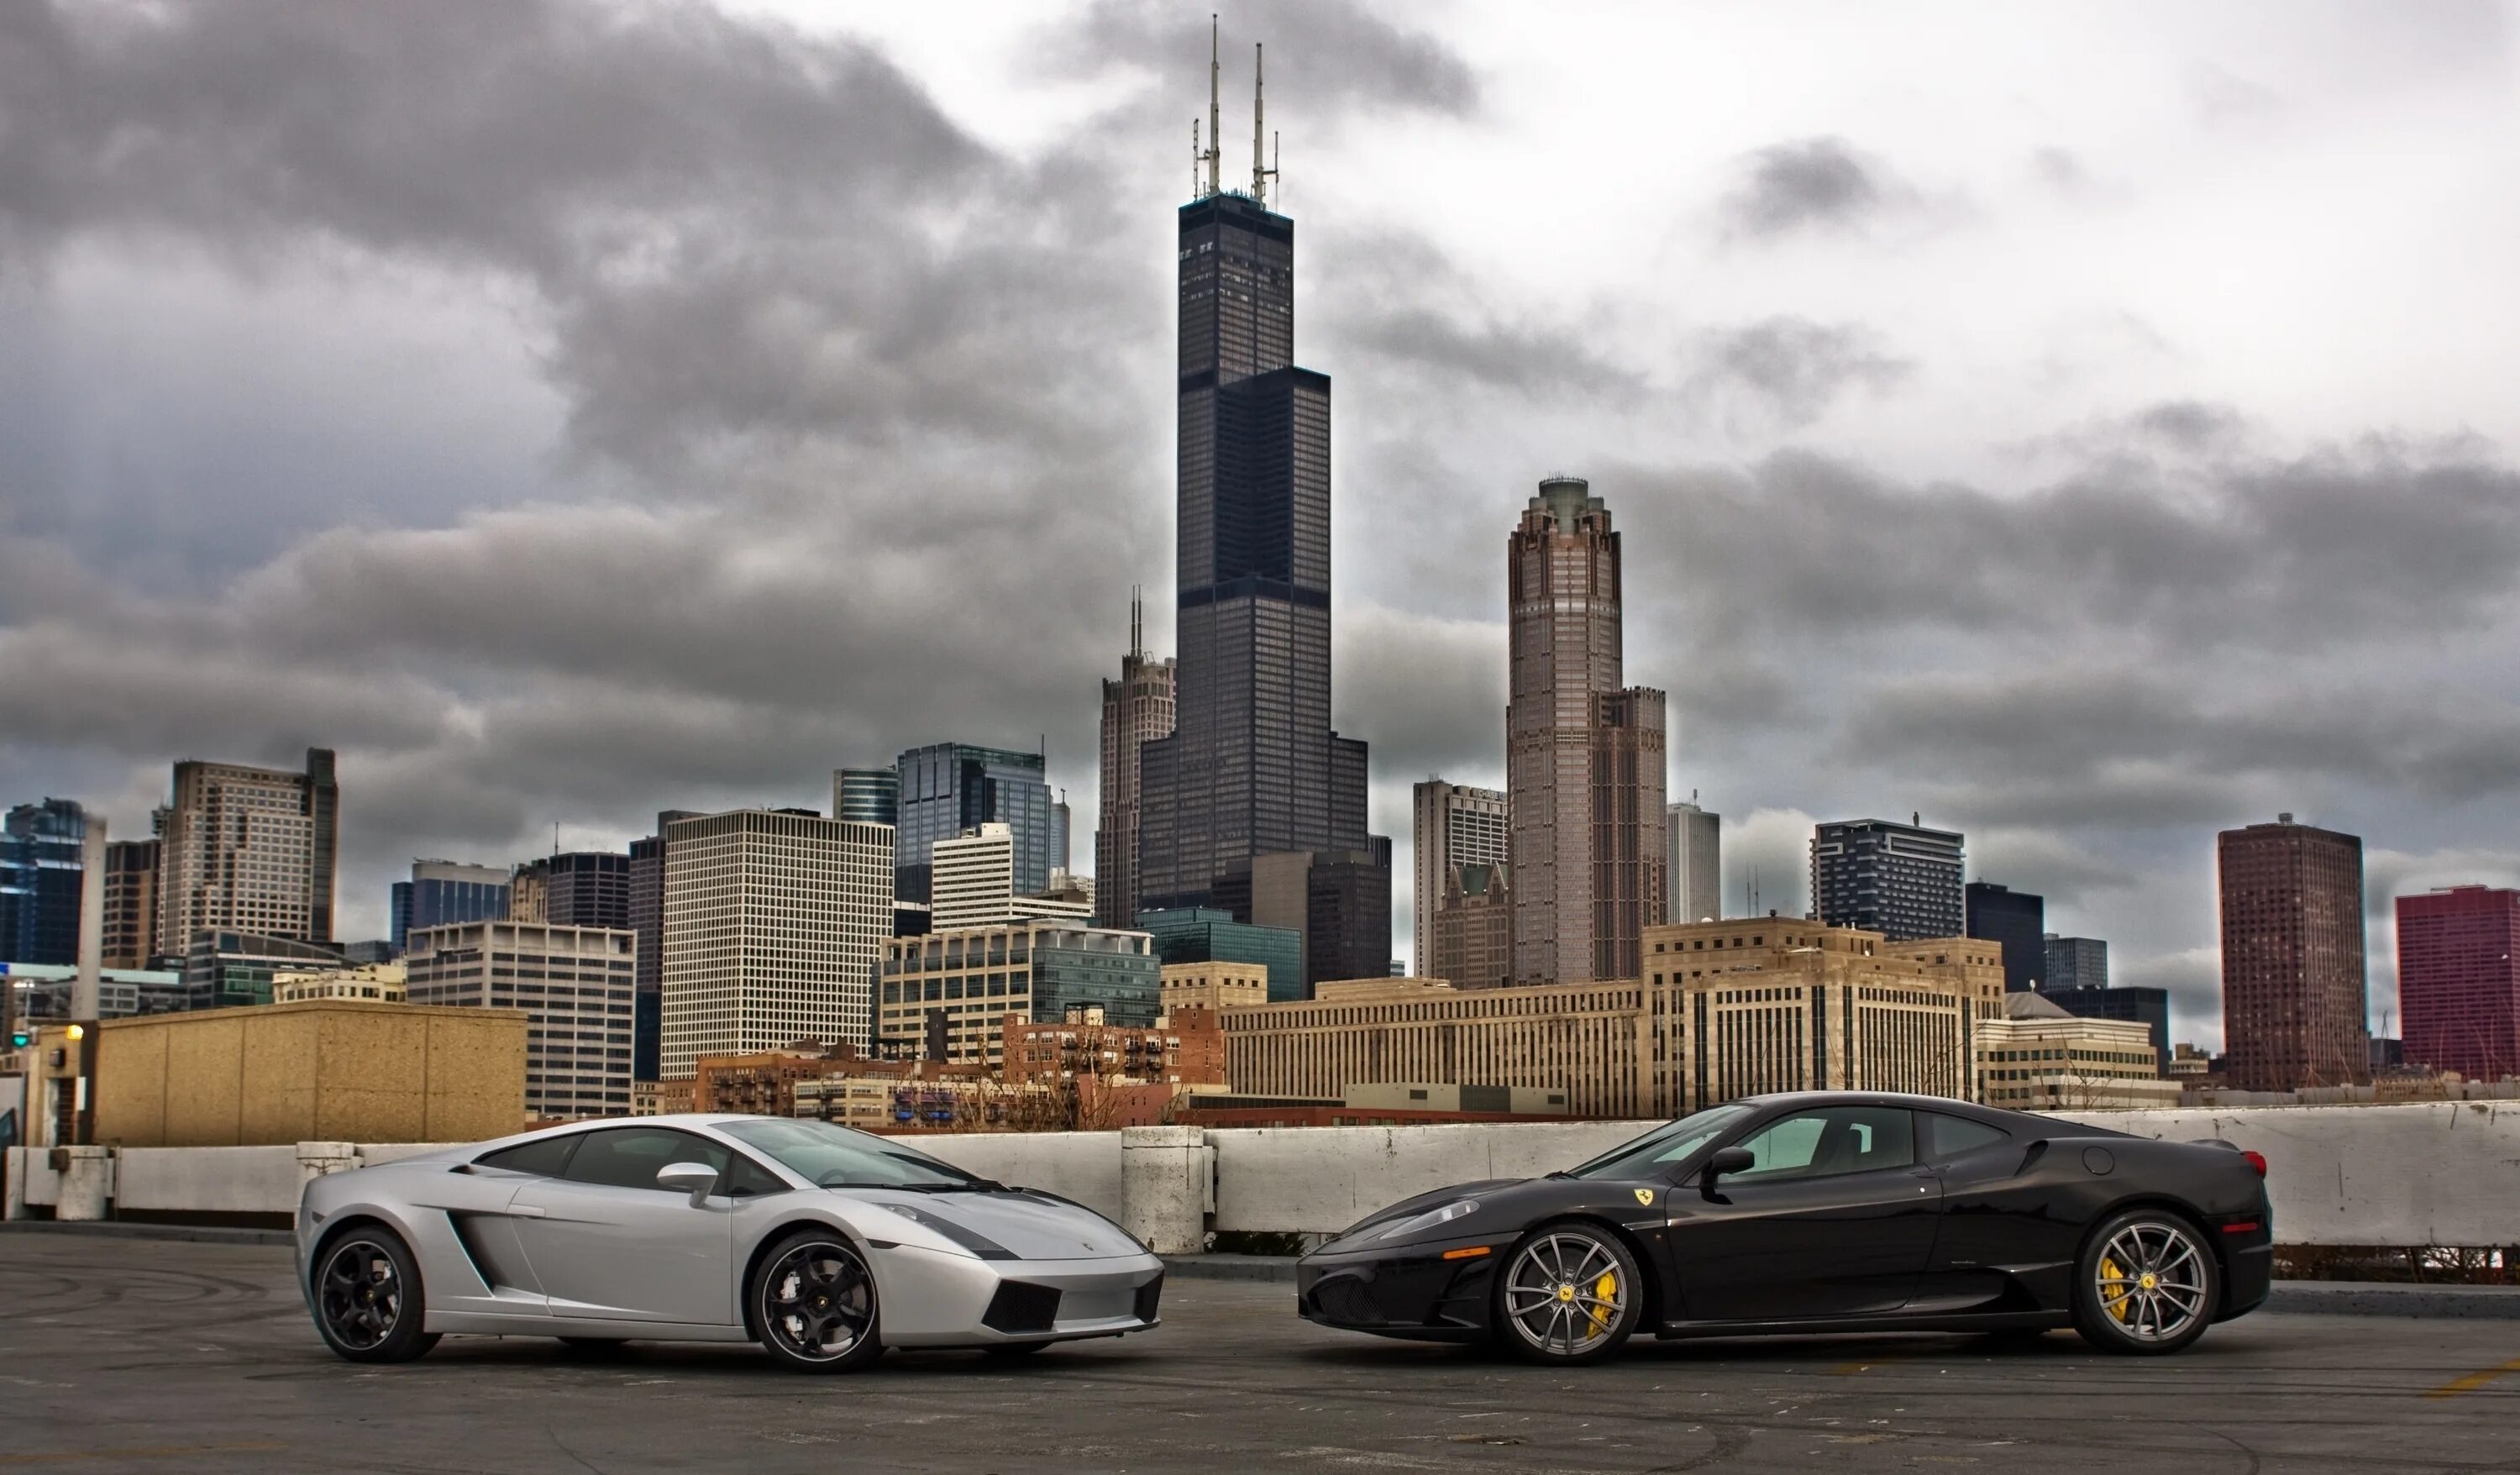 Ламборгини в Нью Йорке. Lamborghini Ferrari Black. Автомобиль и небоскрёбы. Автомобиль на фоне небоскребов. Big city cars